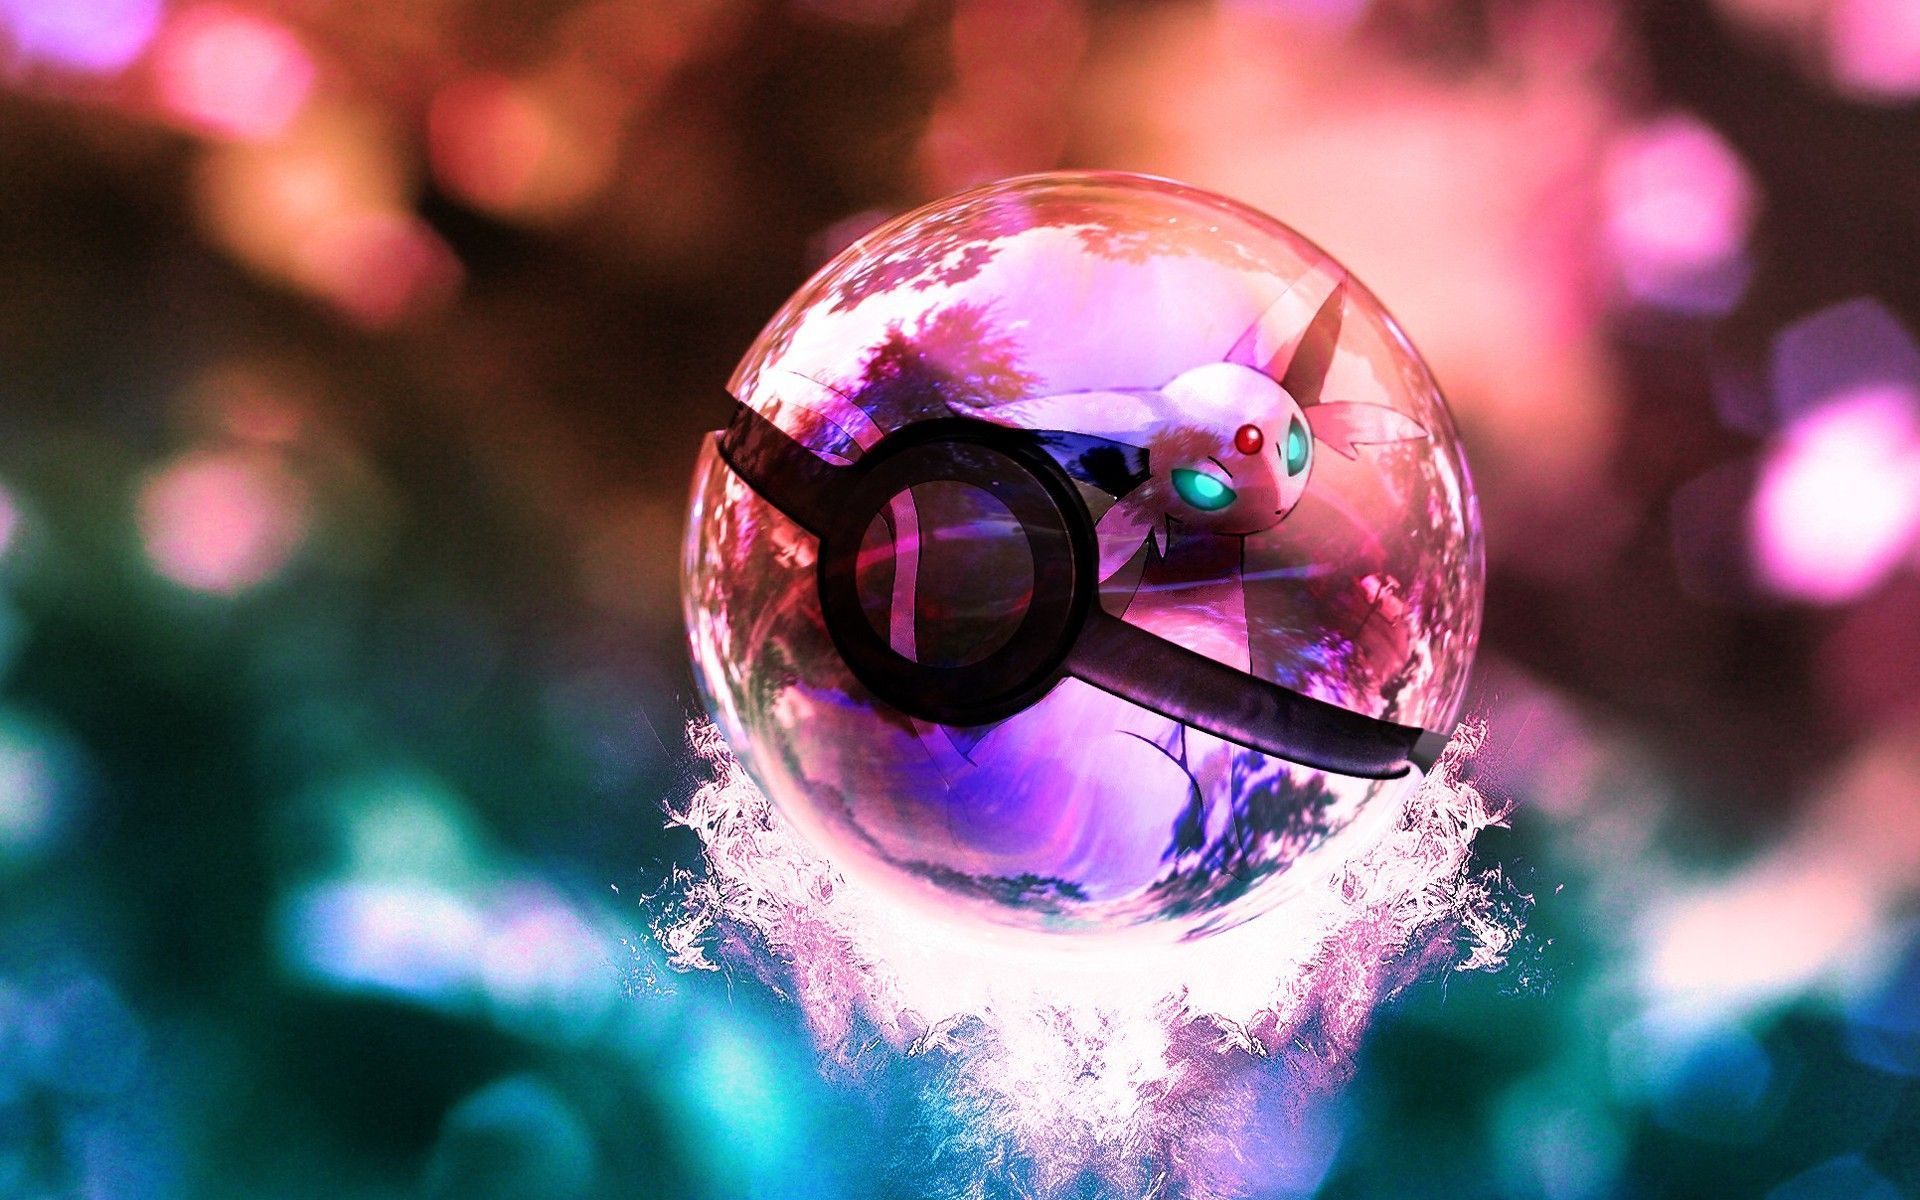 Pokemon poke balls 3D wallpaper .com